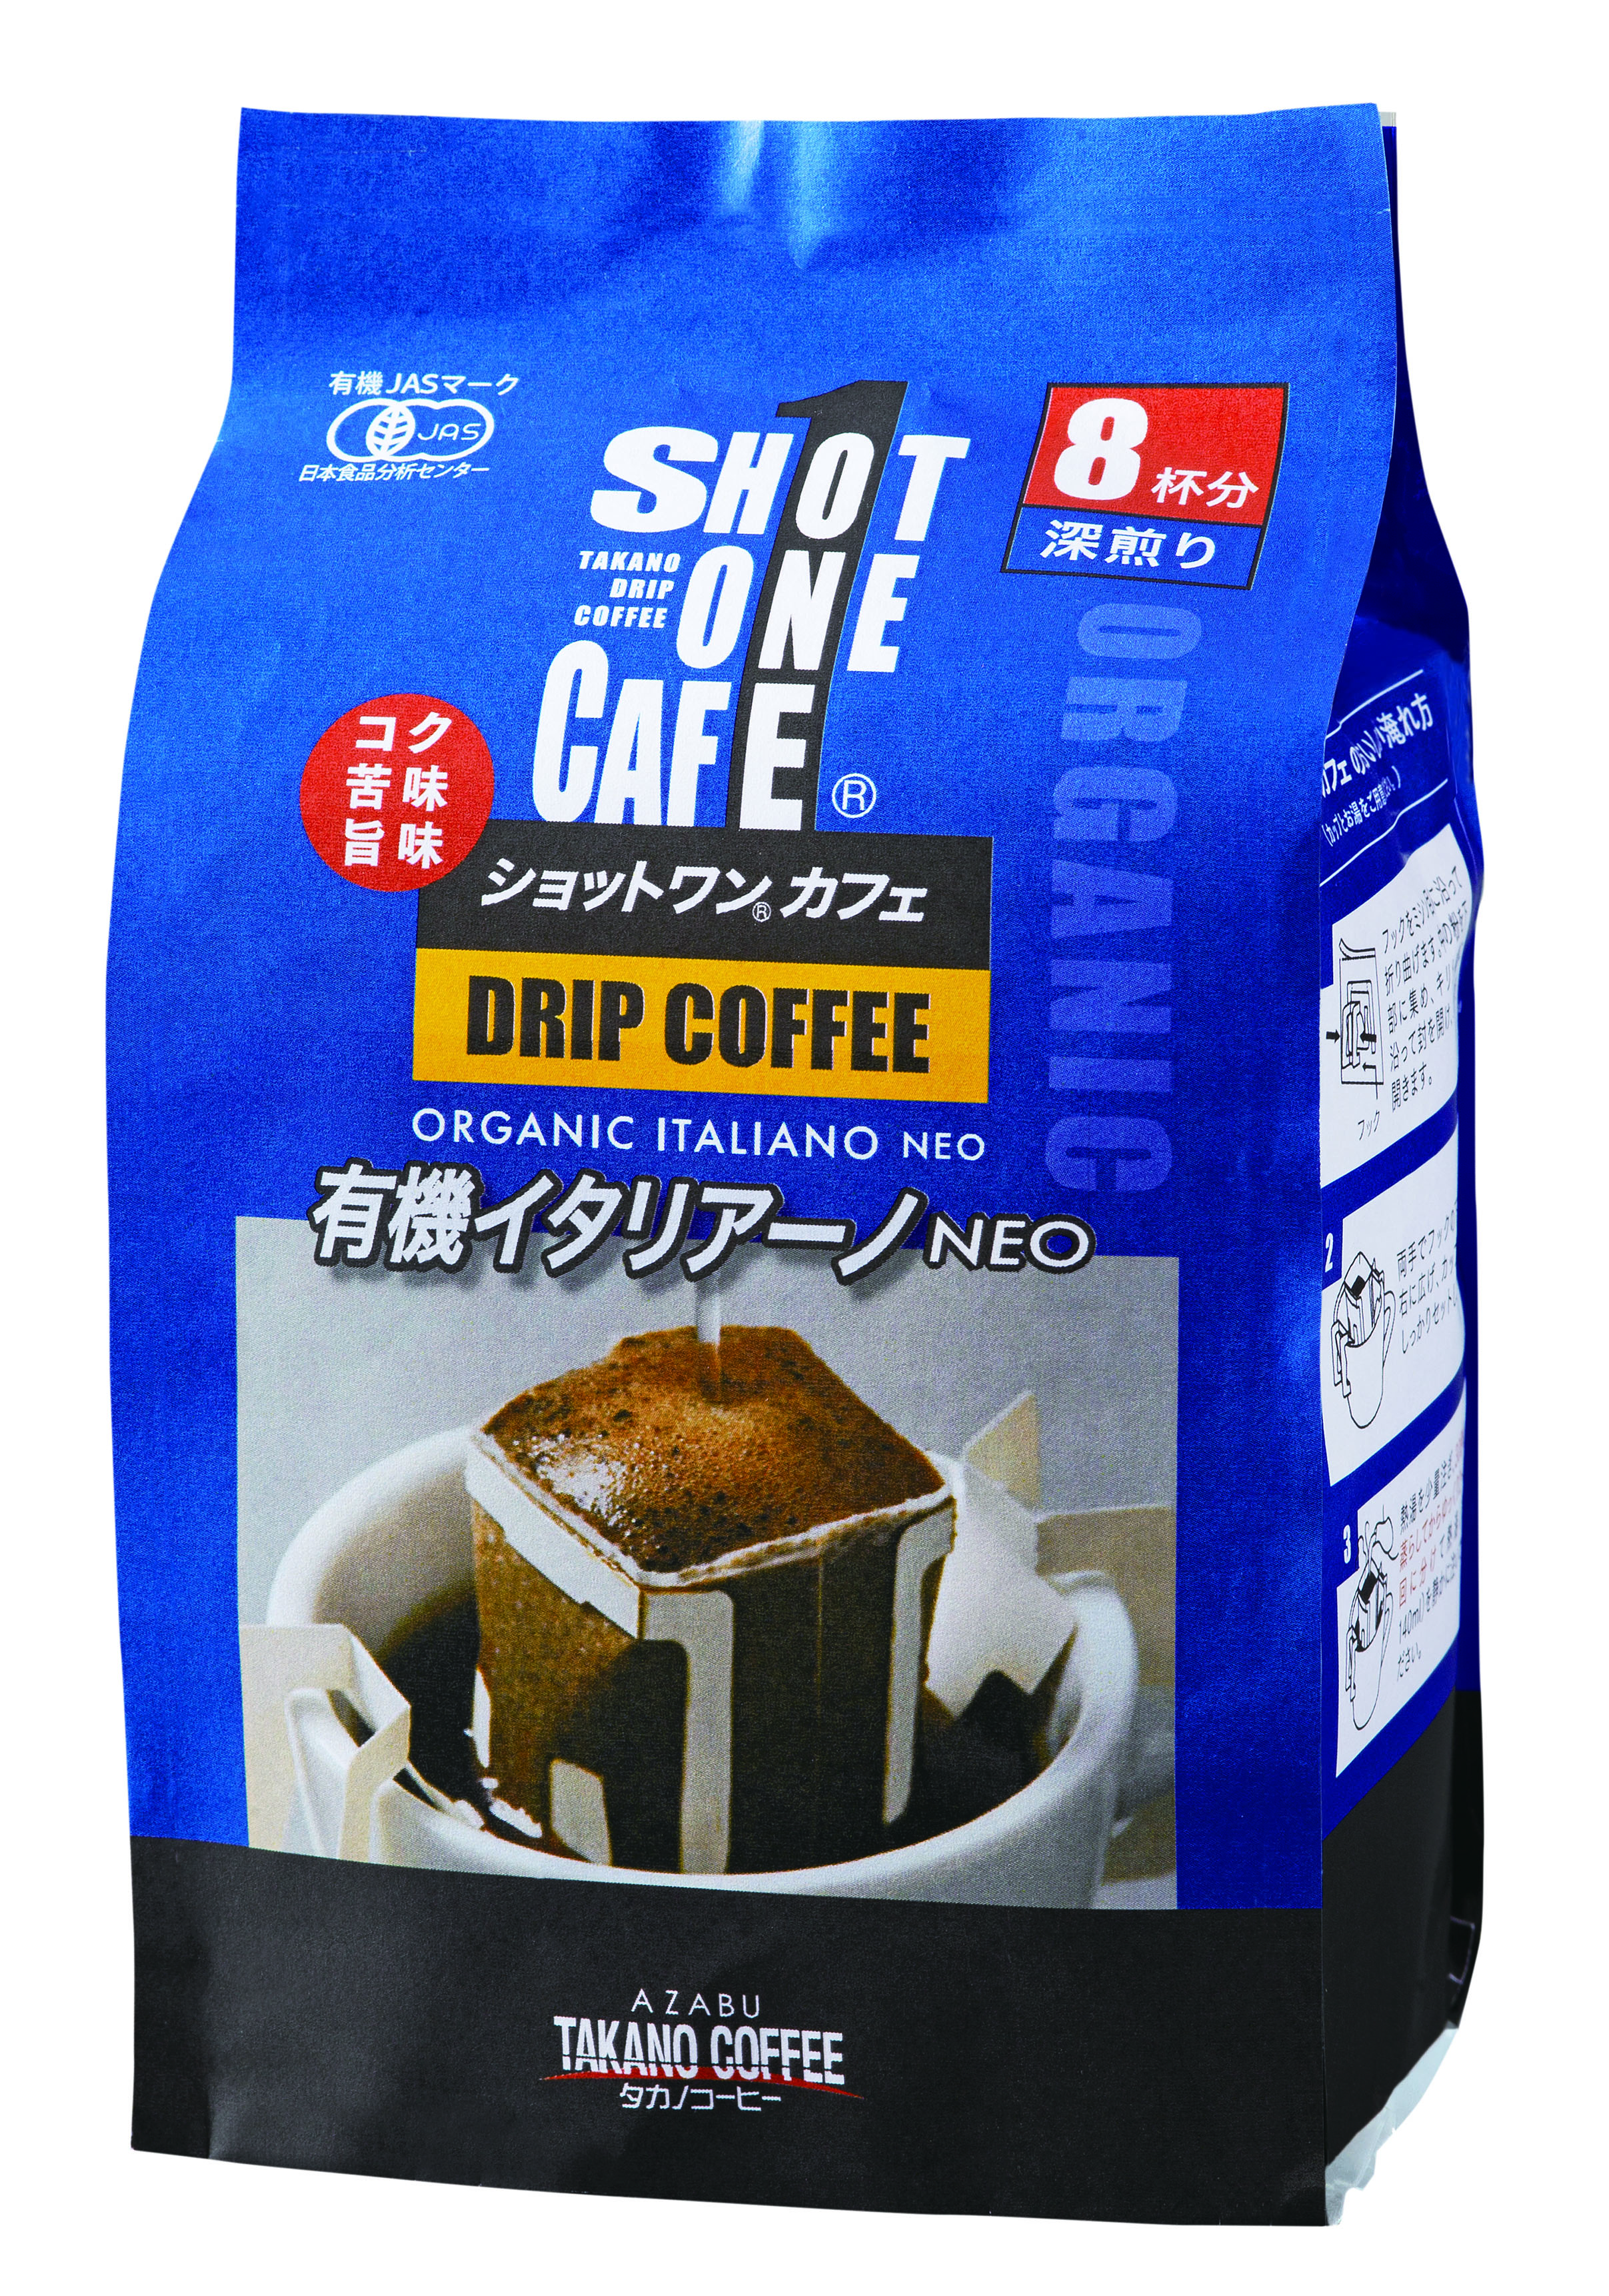 ショットワンカフェ 有機イタリアーノ NEO/8杯分(深煎り)【タカノコーヒー】